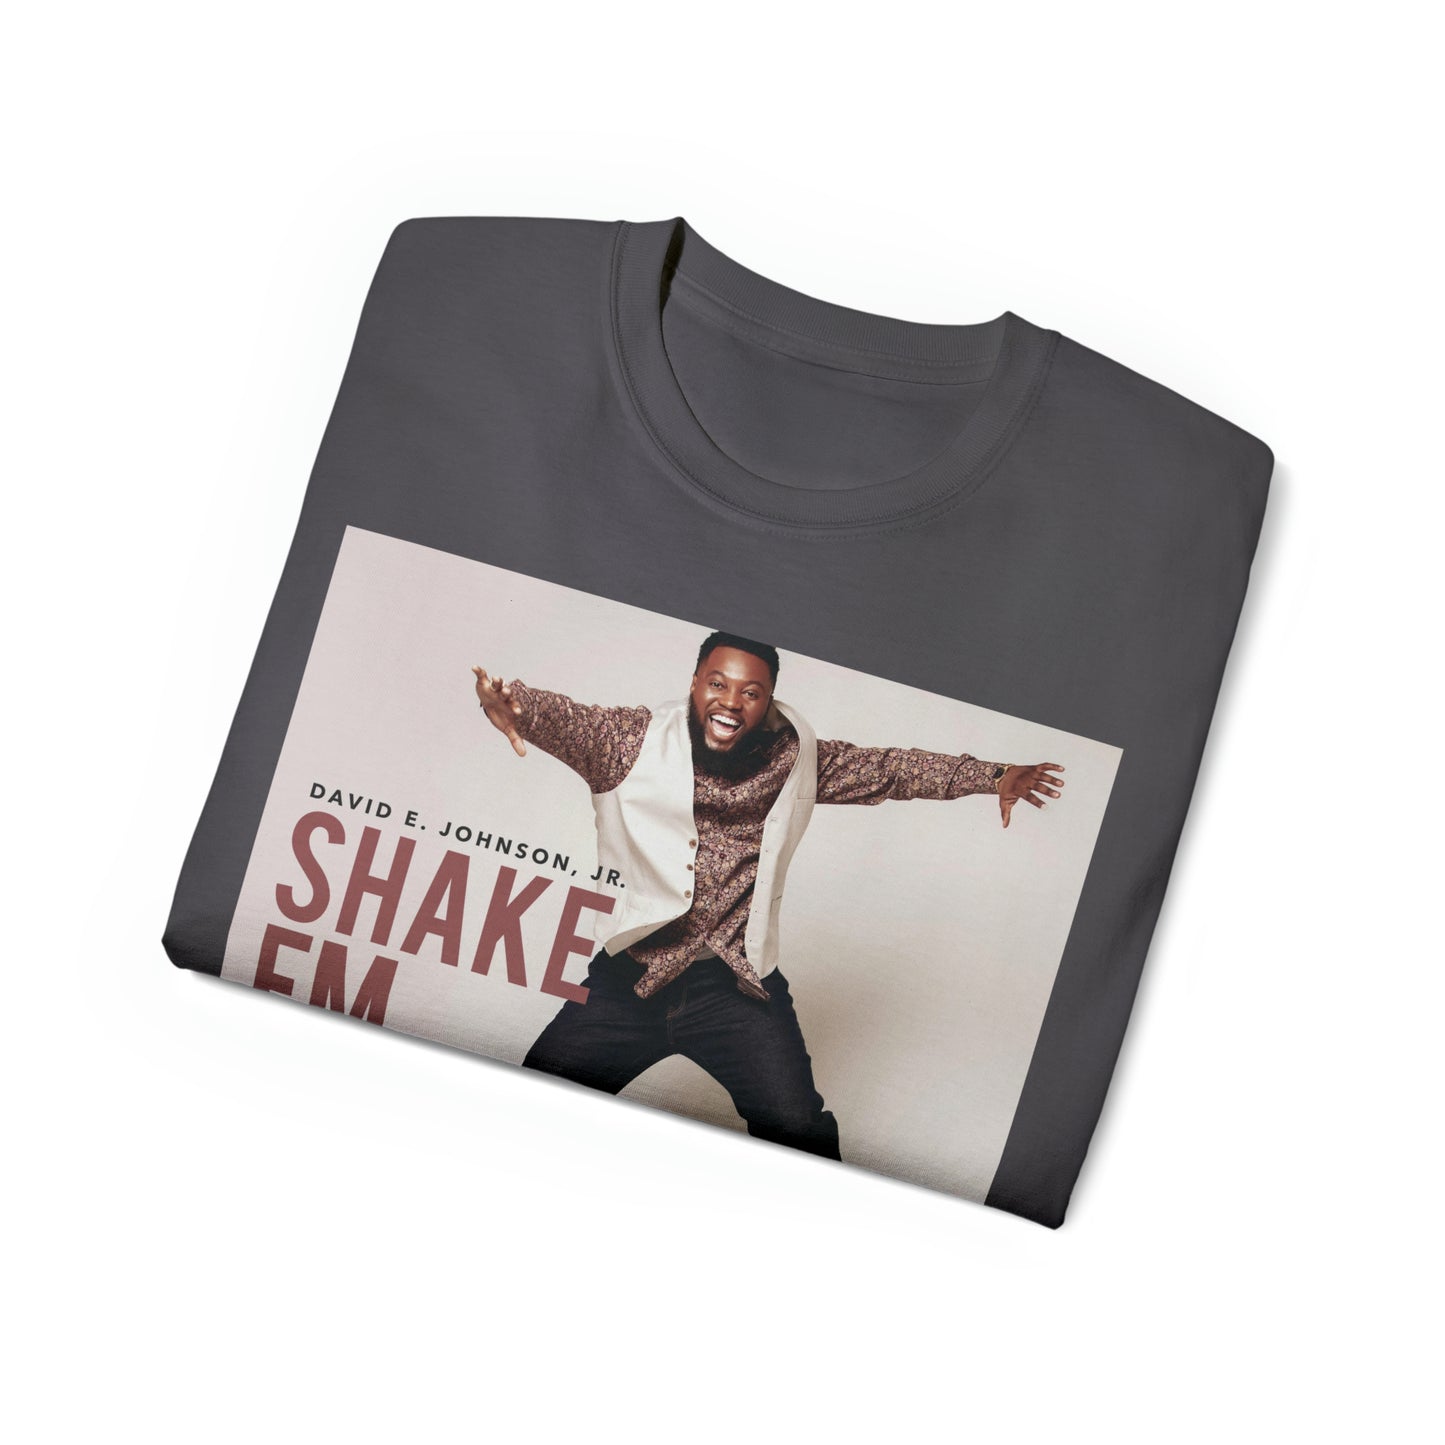 "Shake Em Off" T-Shirt